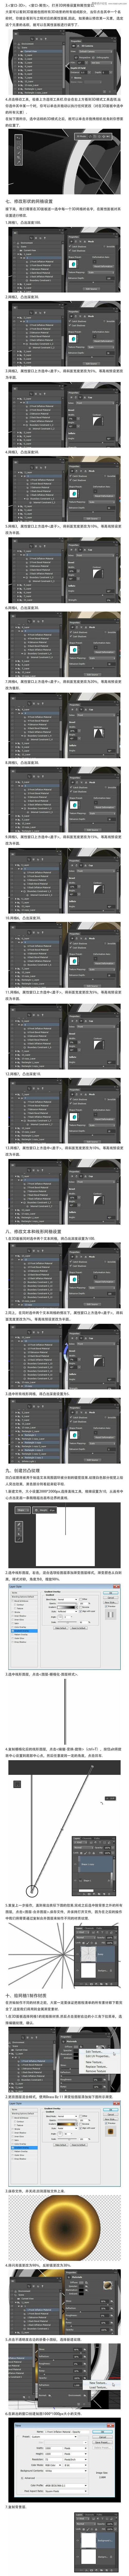 Photoshop制作炫酷的3D金属字体教程,PS教程,素材中国网